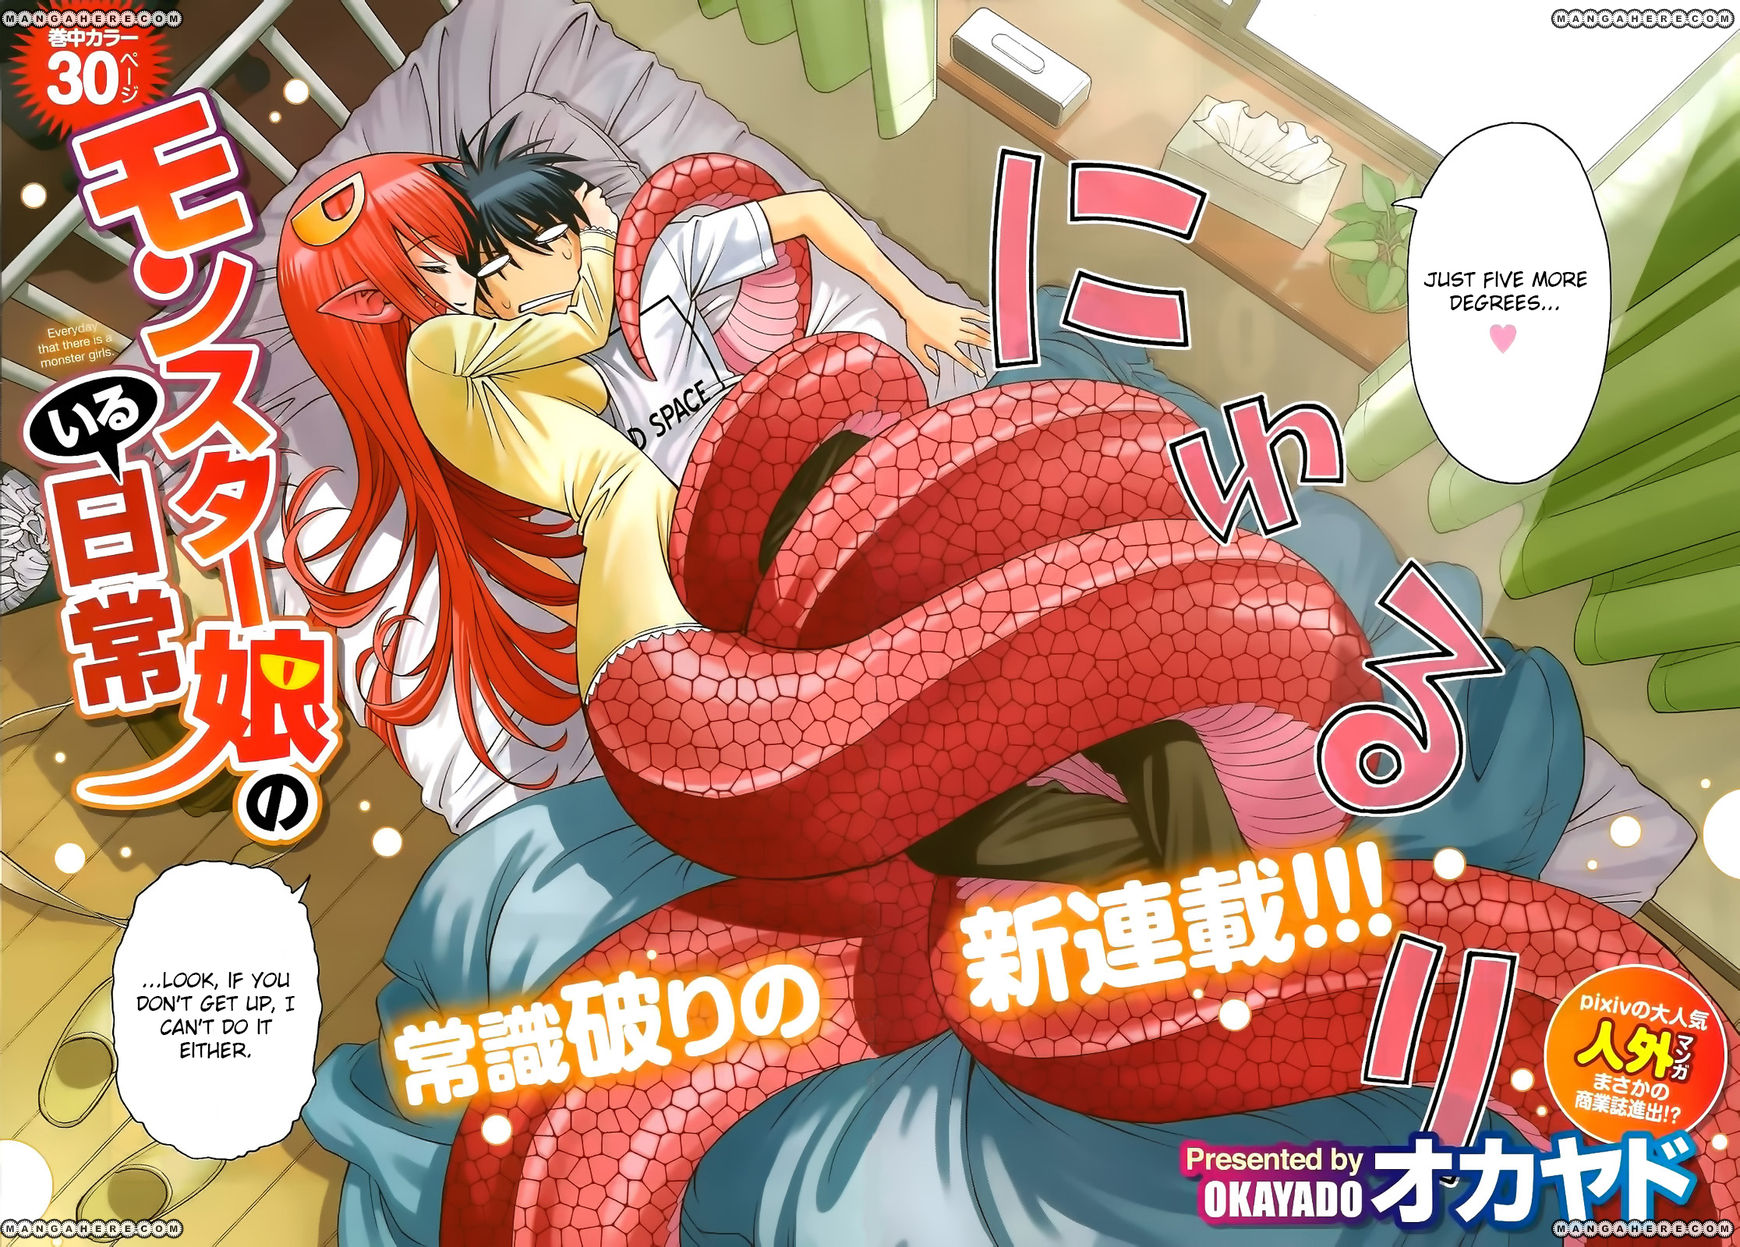 Monster Musume Gets July Anime - Good e-Reader